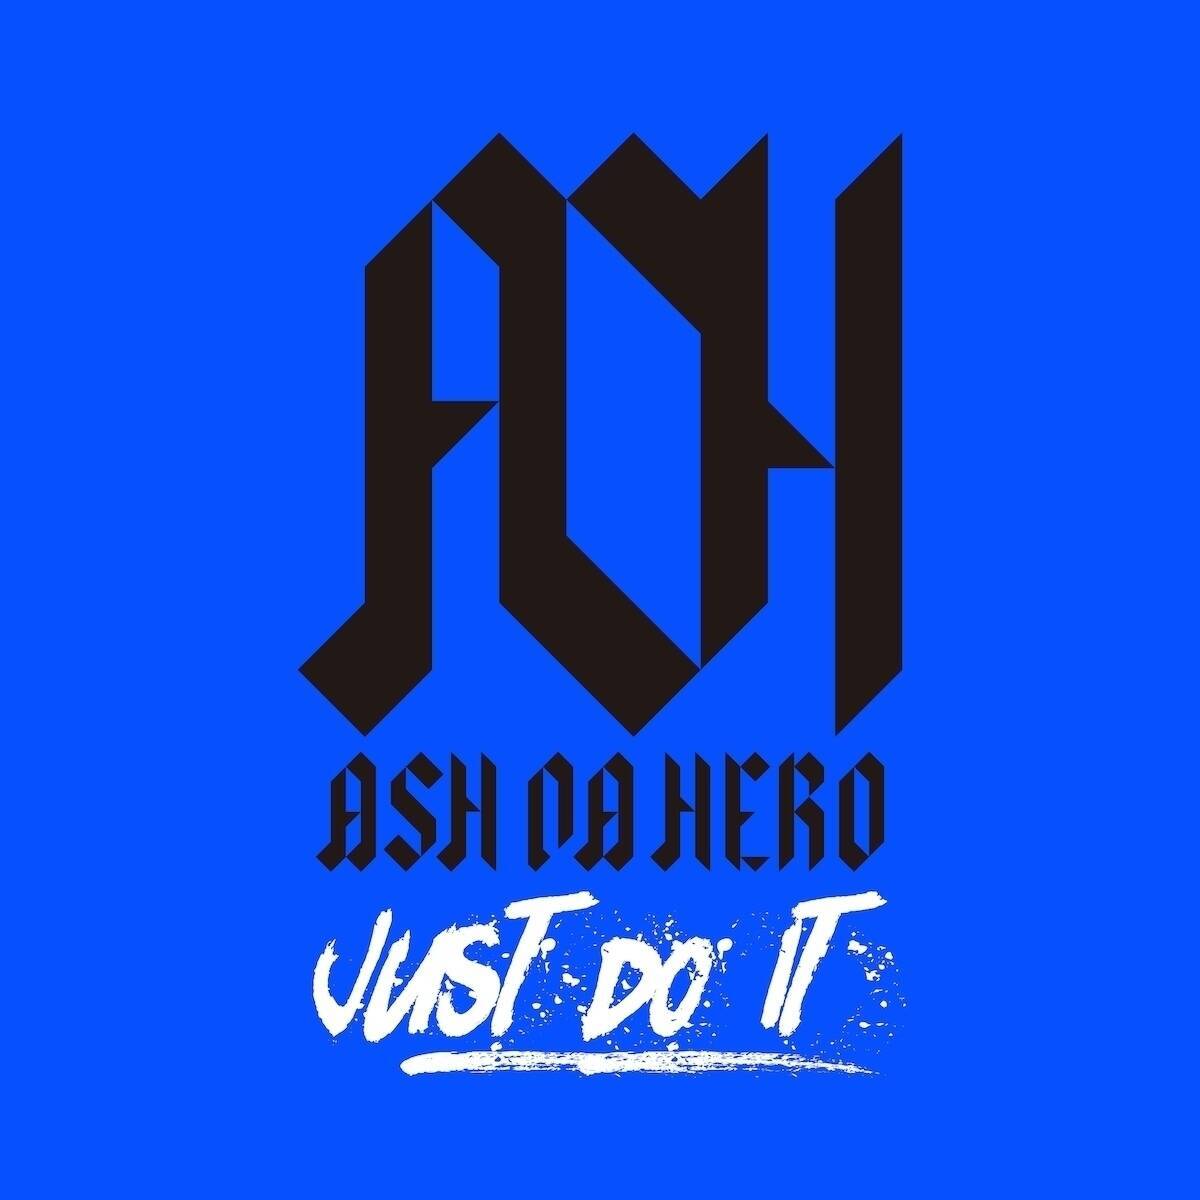 ASH DA HERO、3カ月連続デジタルリリース ロックバンドへと進化後初の楽曲発表